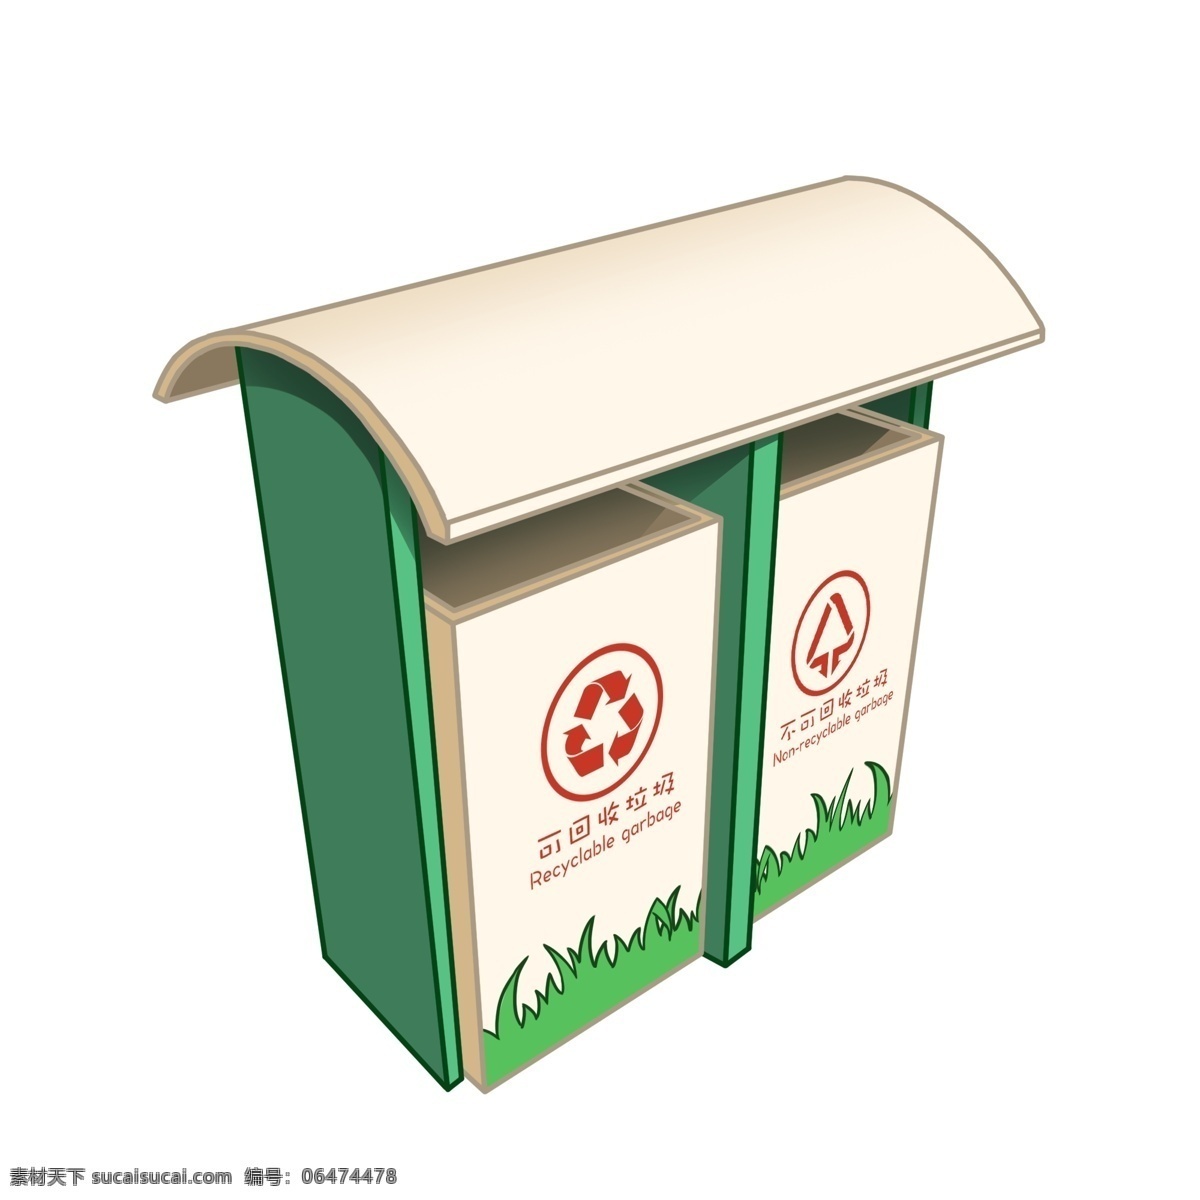 免 扣 卡通 绿色 垃圾桶 环保低碳 环保公益 保护环境 绿色环保 垃圾回收 垃圾污染 城市绿化 绿色家园 校园卫生 城市卫生